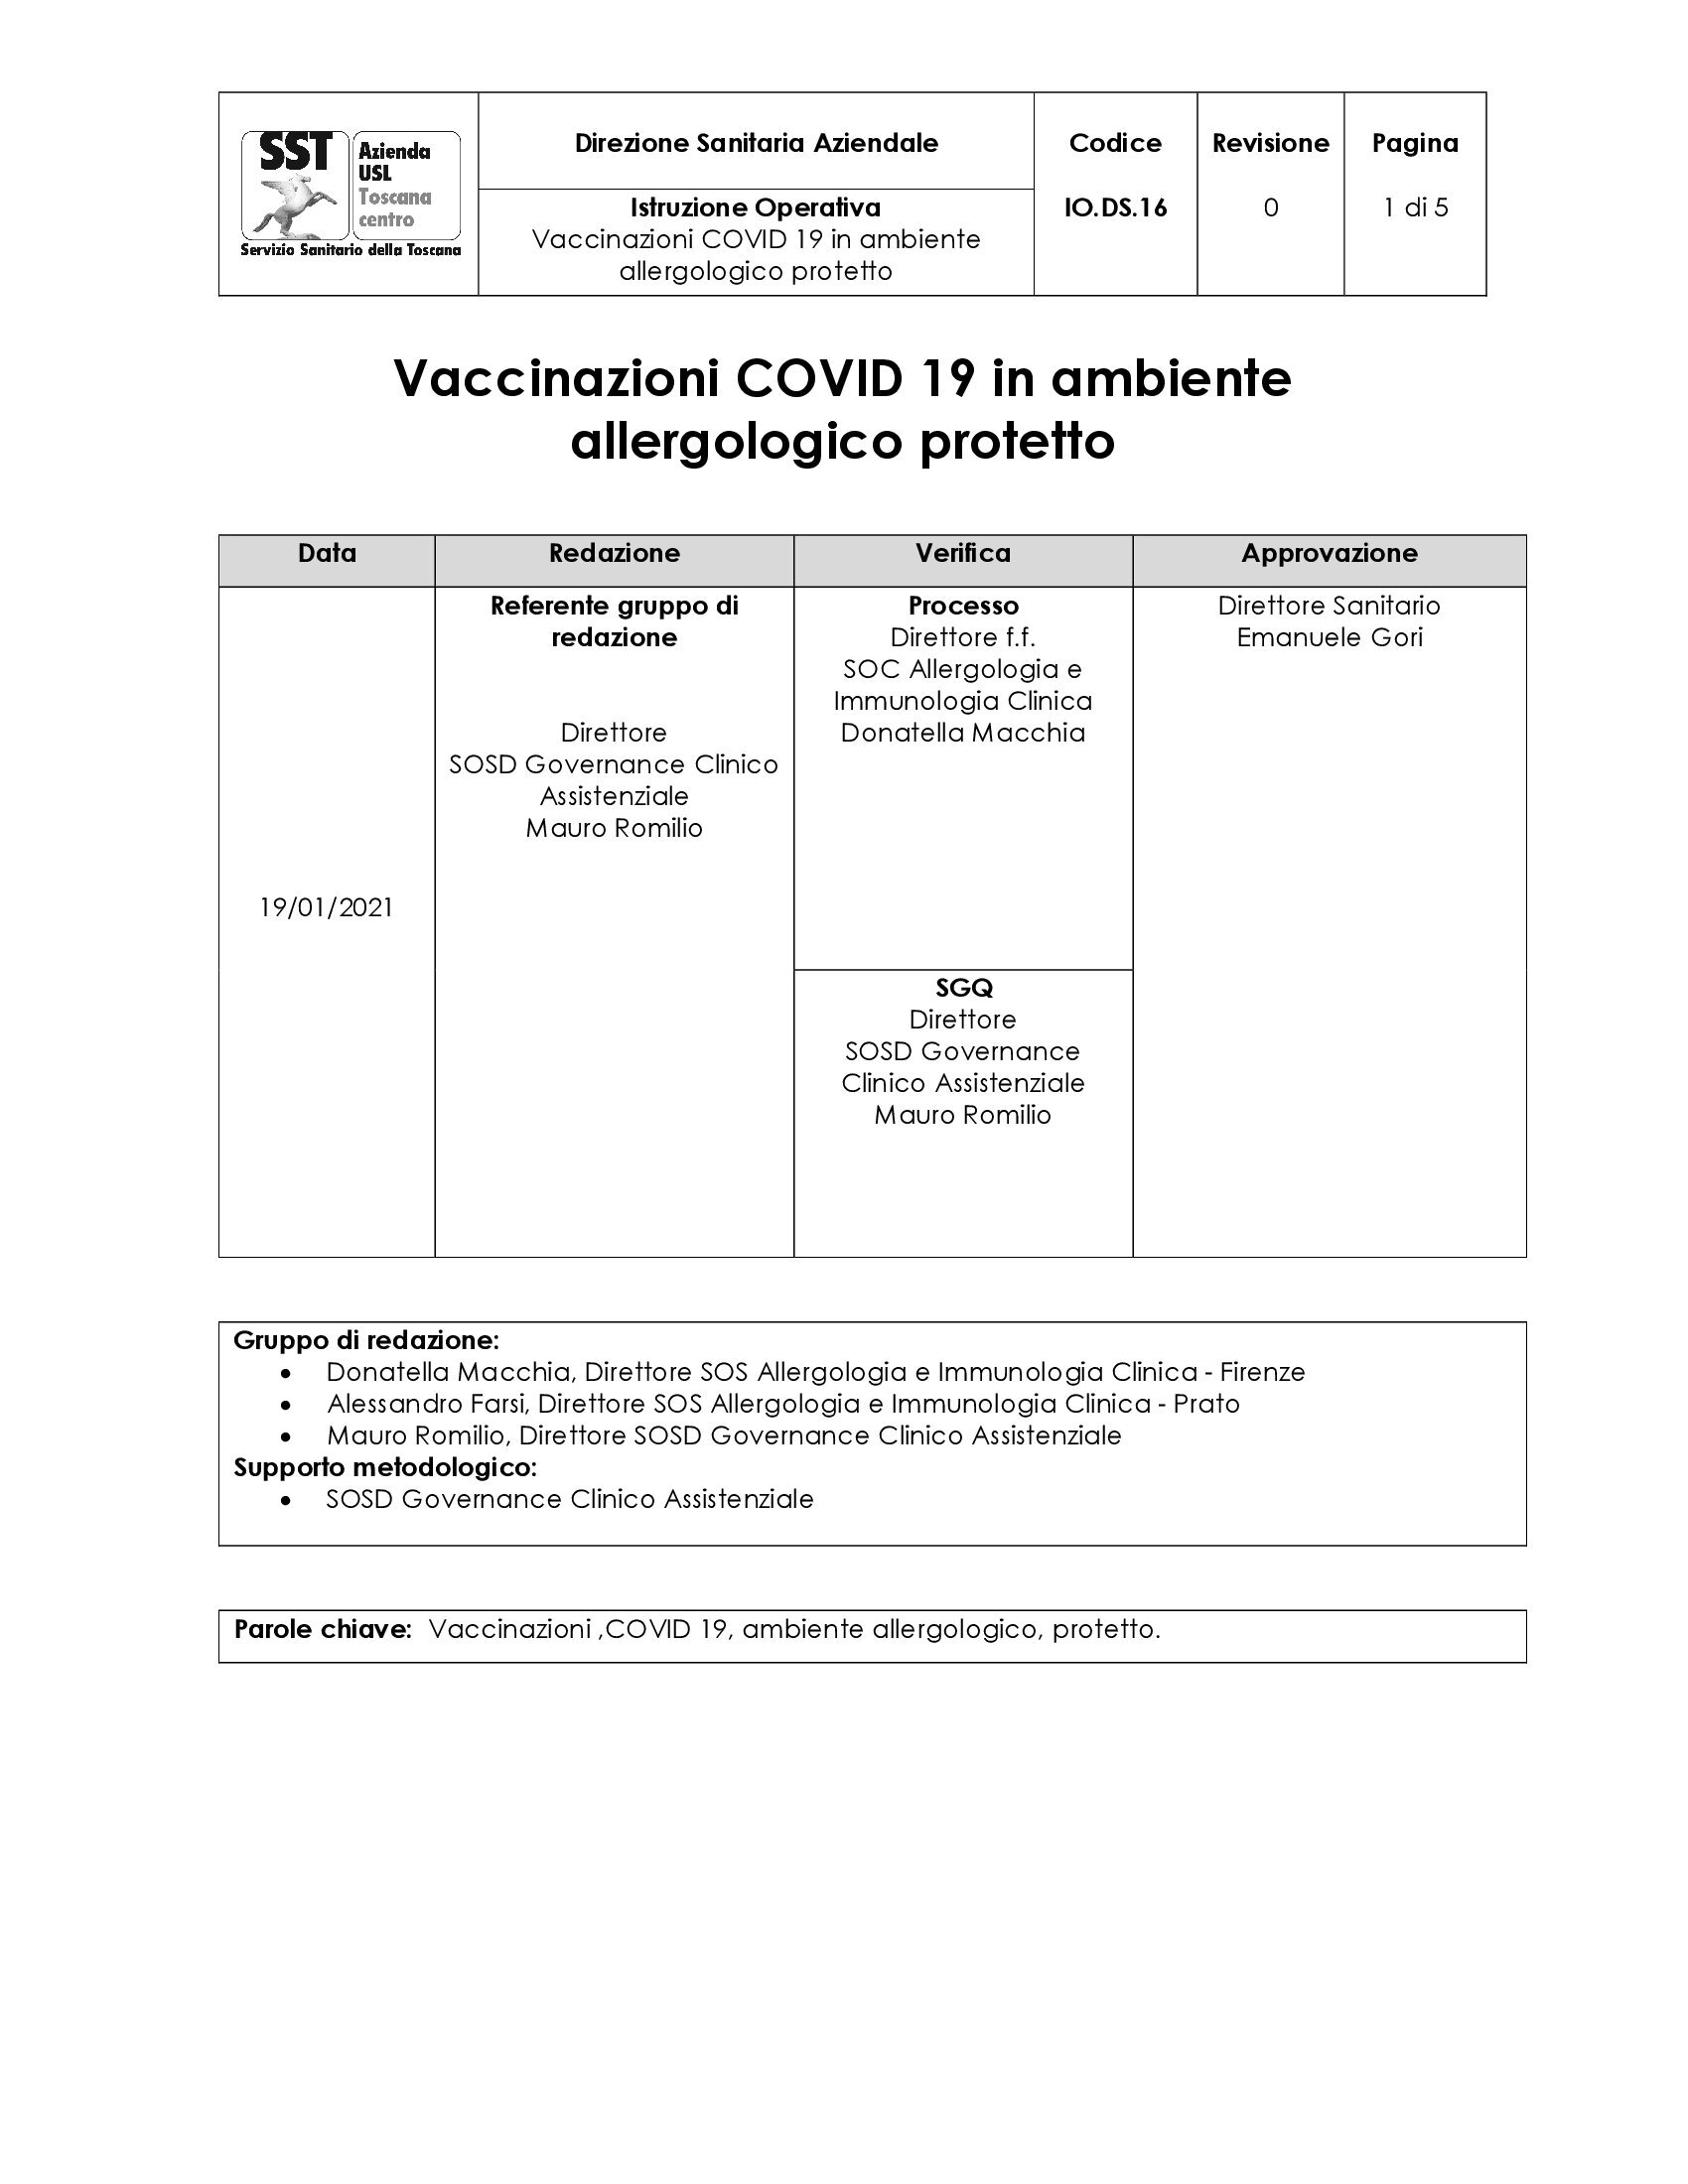 IO.DS.16 Vaccinazioni COVID 19 in ambiente allergologico protetto